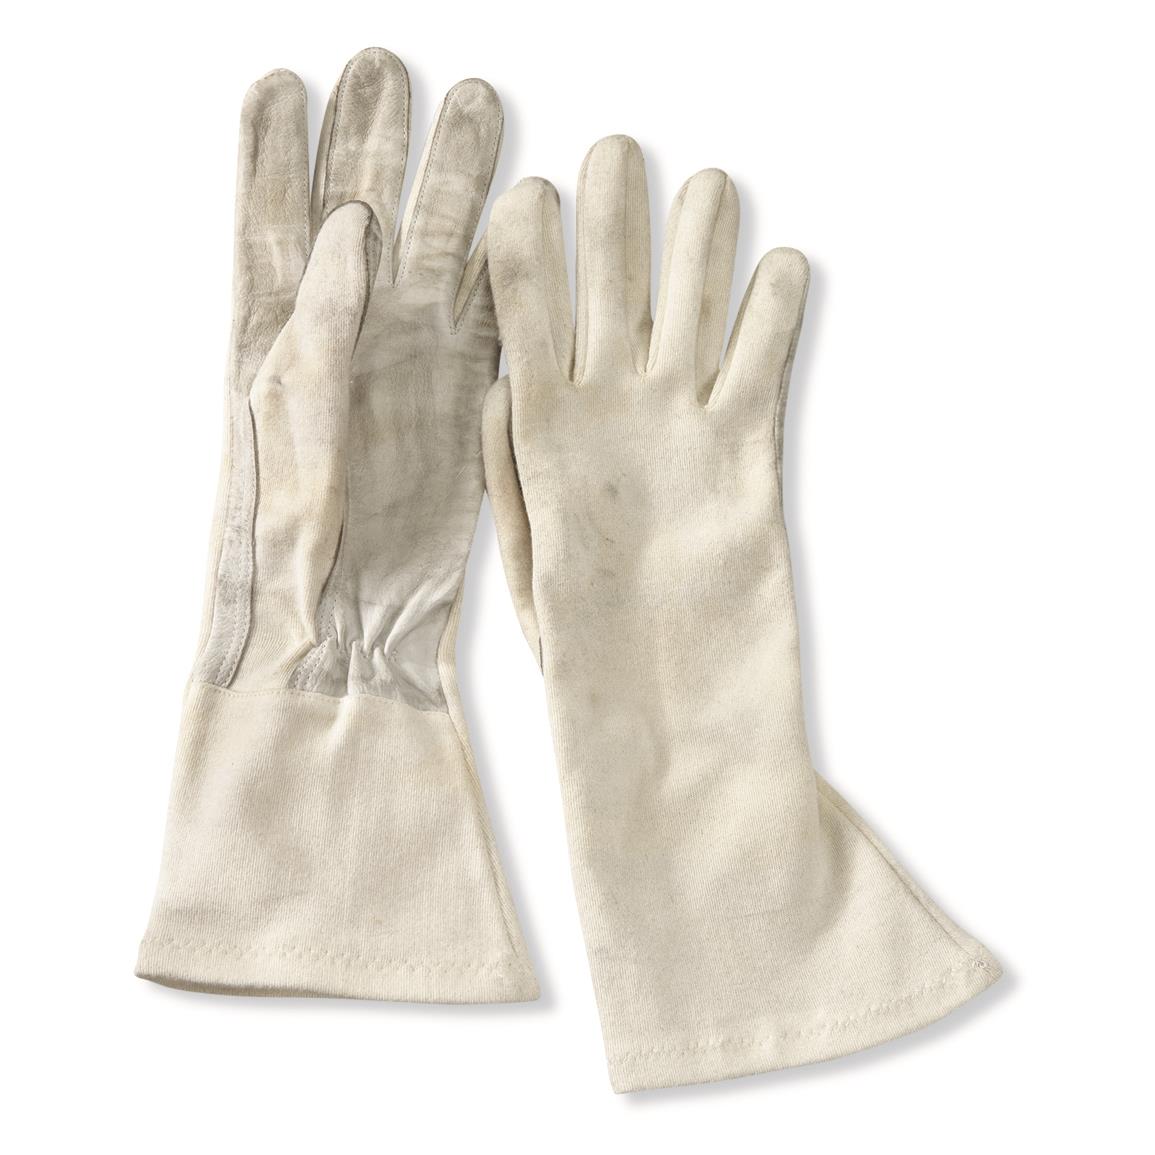 German Military Surplus Aramid Gloves, Used